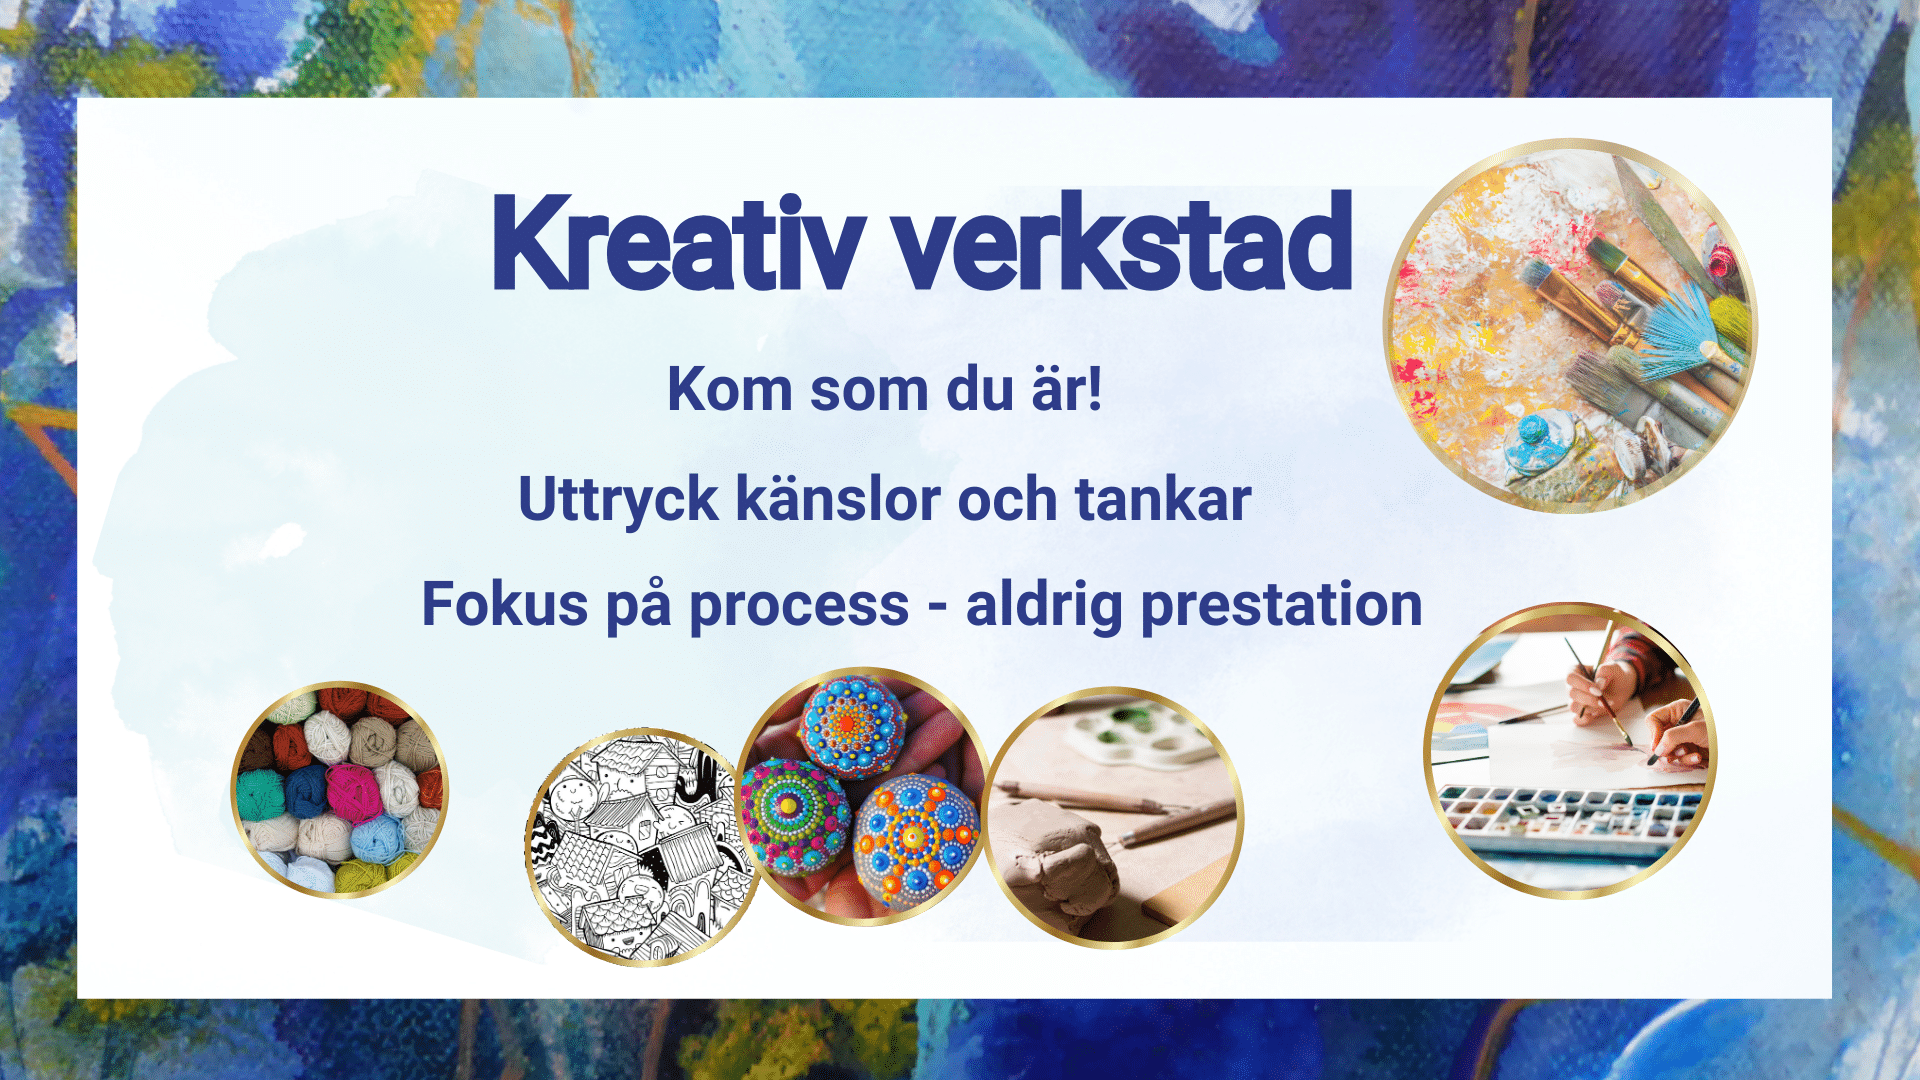 Rubrik där det står "Kreativ verkstad". 6 st cirklar med foton på olika kreativ aktiviteter: penslar, zen-tangle, garn, mandala, vattenfärg, lera.